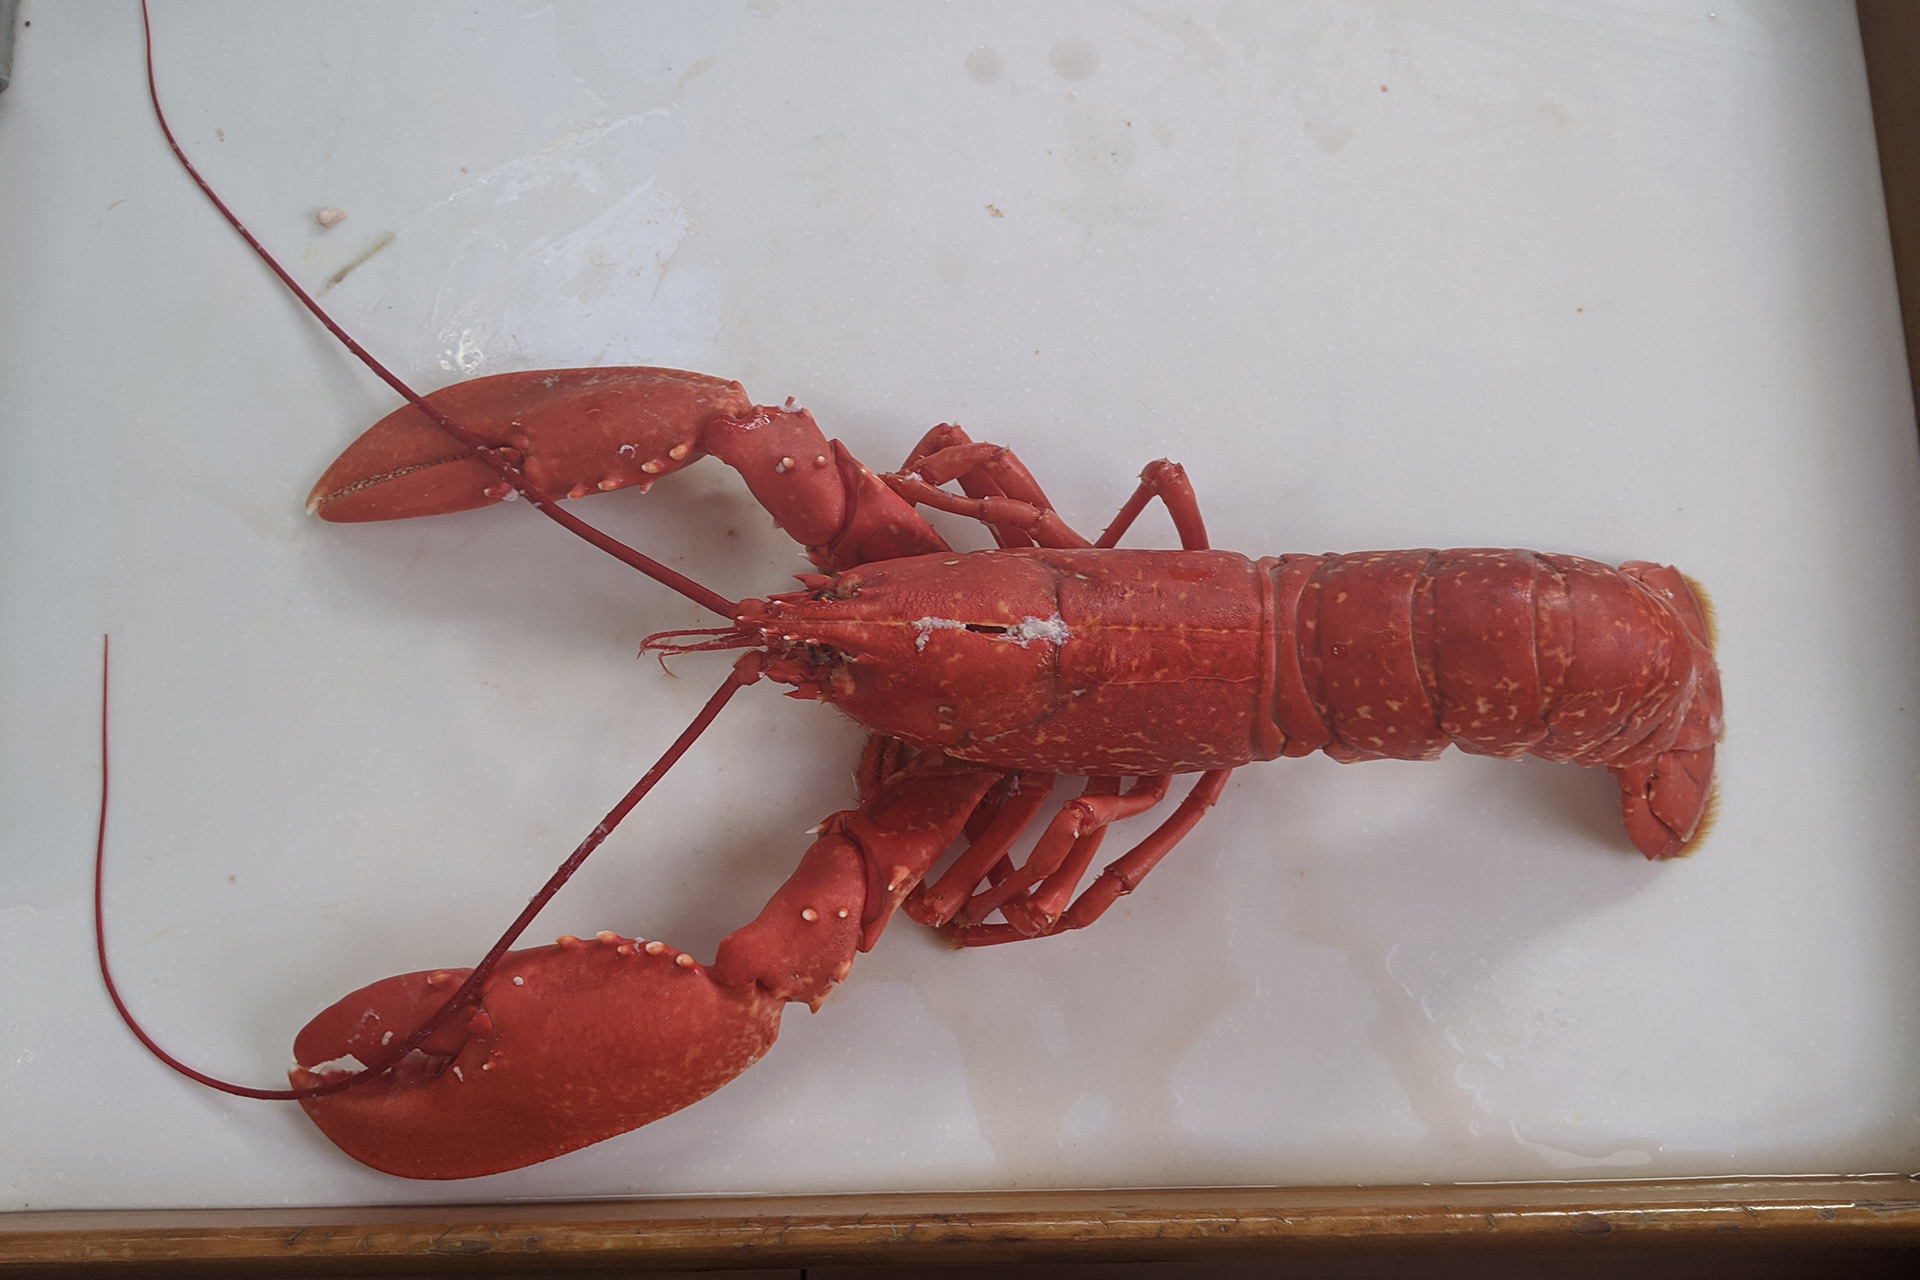 Lobster for dinner